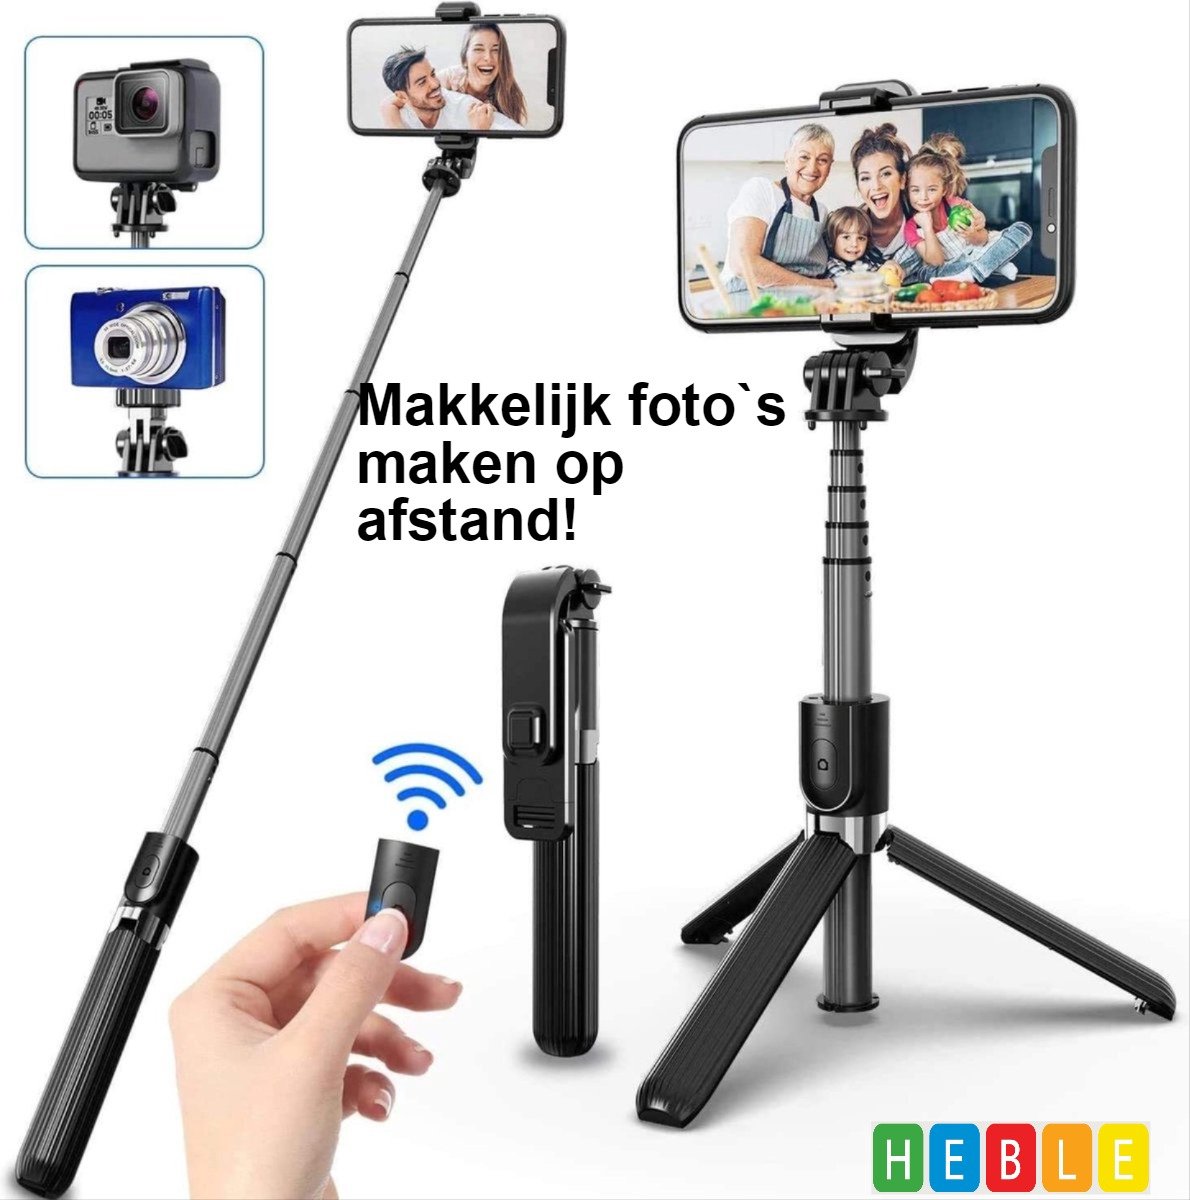 *** 3-in-1 Selfie-Stick-Tripod - Zwart - Smartphone-Vlog-Tripod - Selfies Maken op Afstand - van Heble® ***